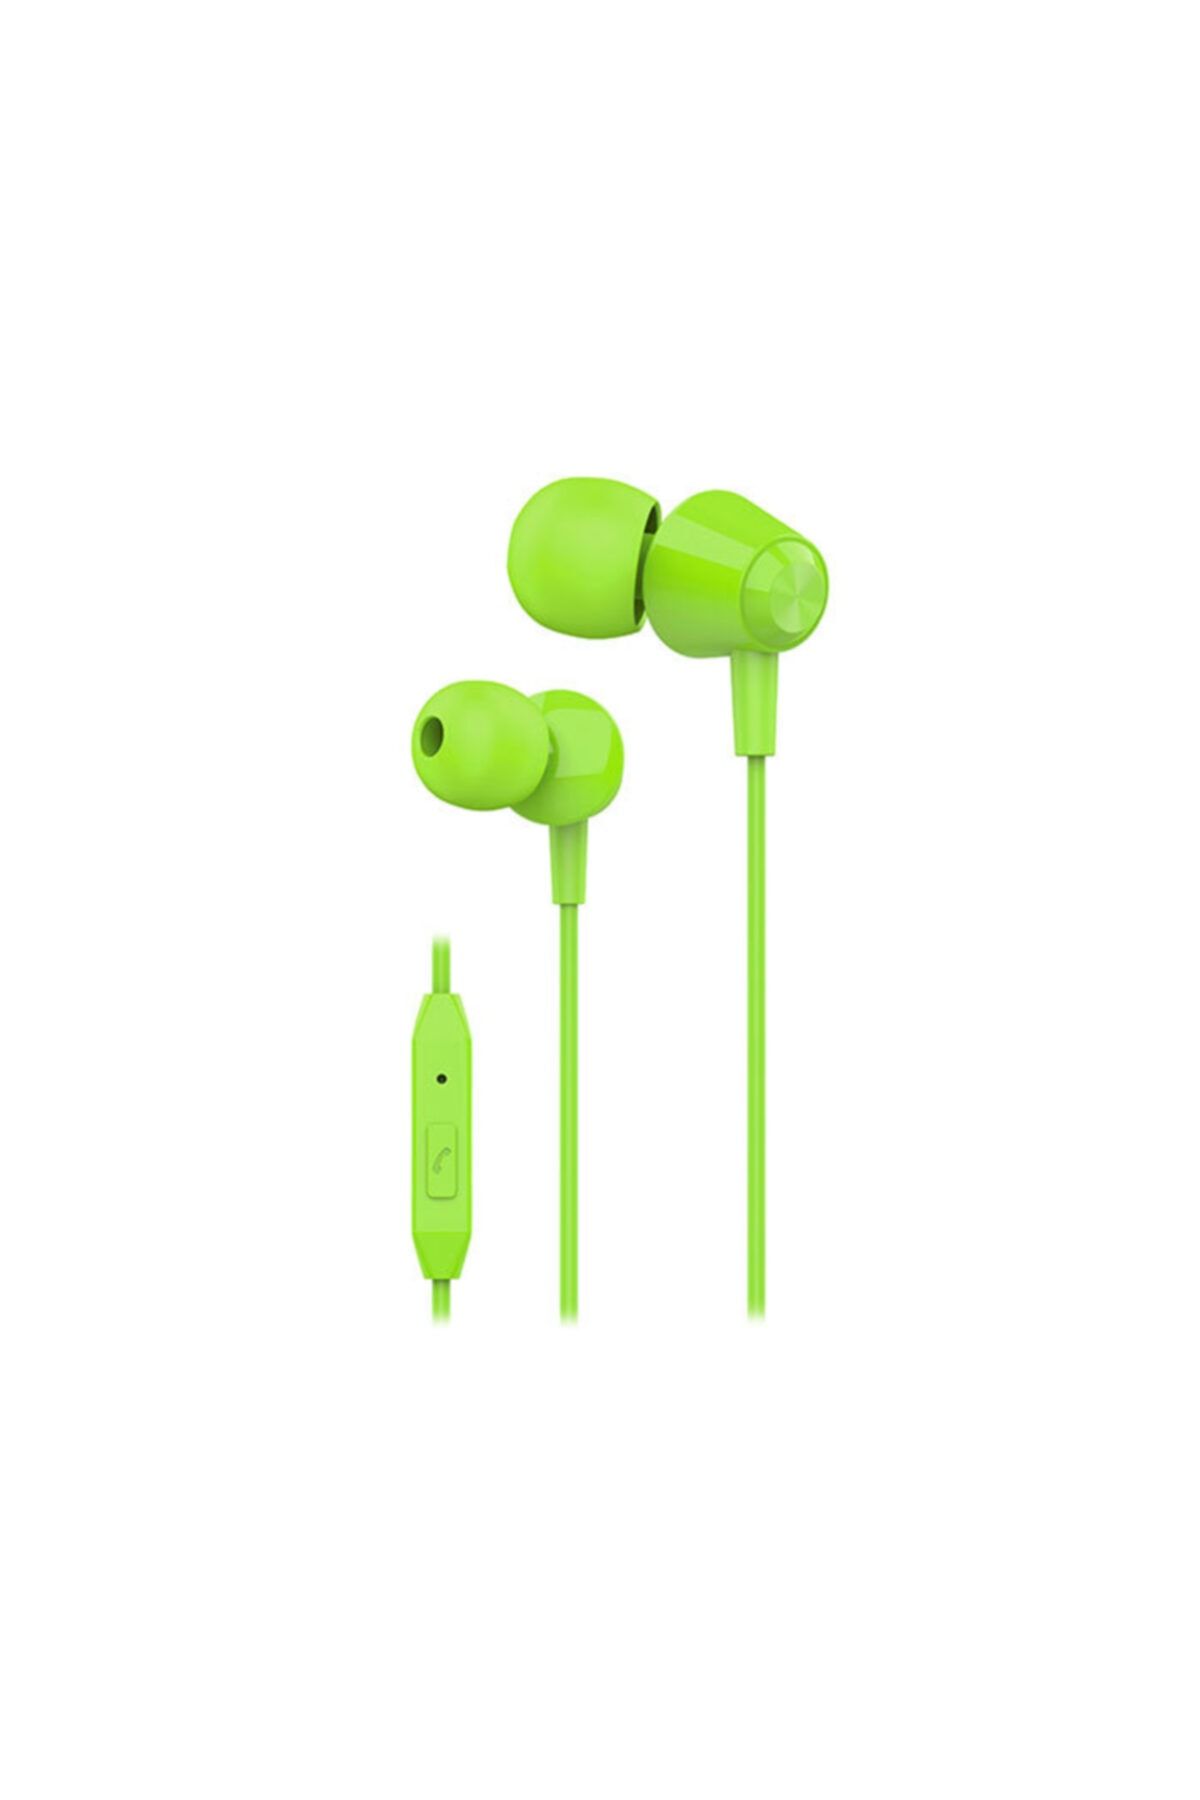 S-Link Sl-ku160 Mobil Telefon Uyumlu Yeşil Kulak Içi Mikrofonlu Kulaklık Cep Telefonu Kulaklığı